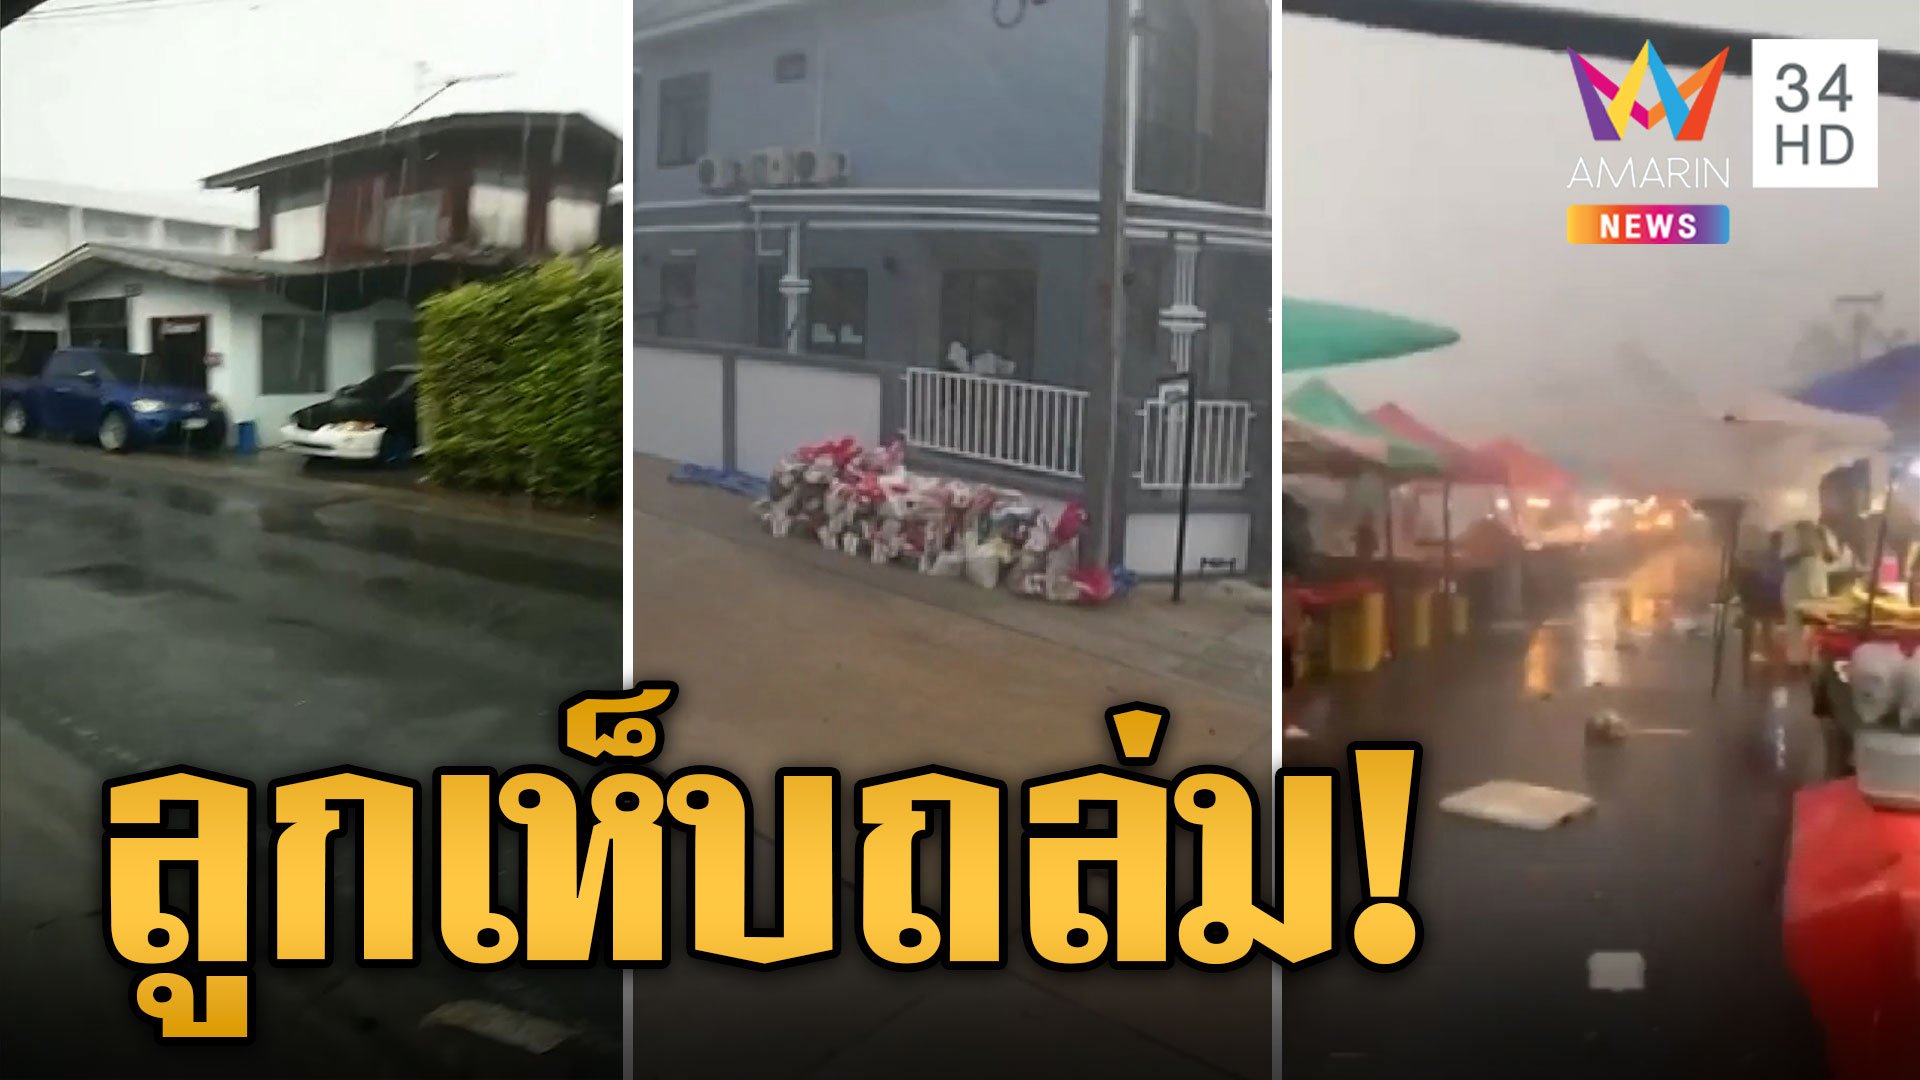 อากาศแปรปรวน! ฝนกระหน่ำ 'ลูกเห็บ' ถล่มสมุทรปราการ  | ข่าวเที่ยงอมรินทร์ | 21 ก.ย. 66 | AMARIN TVHD34